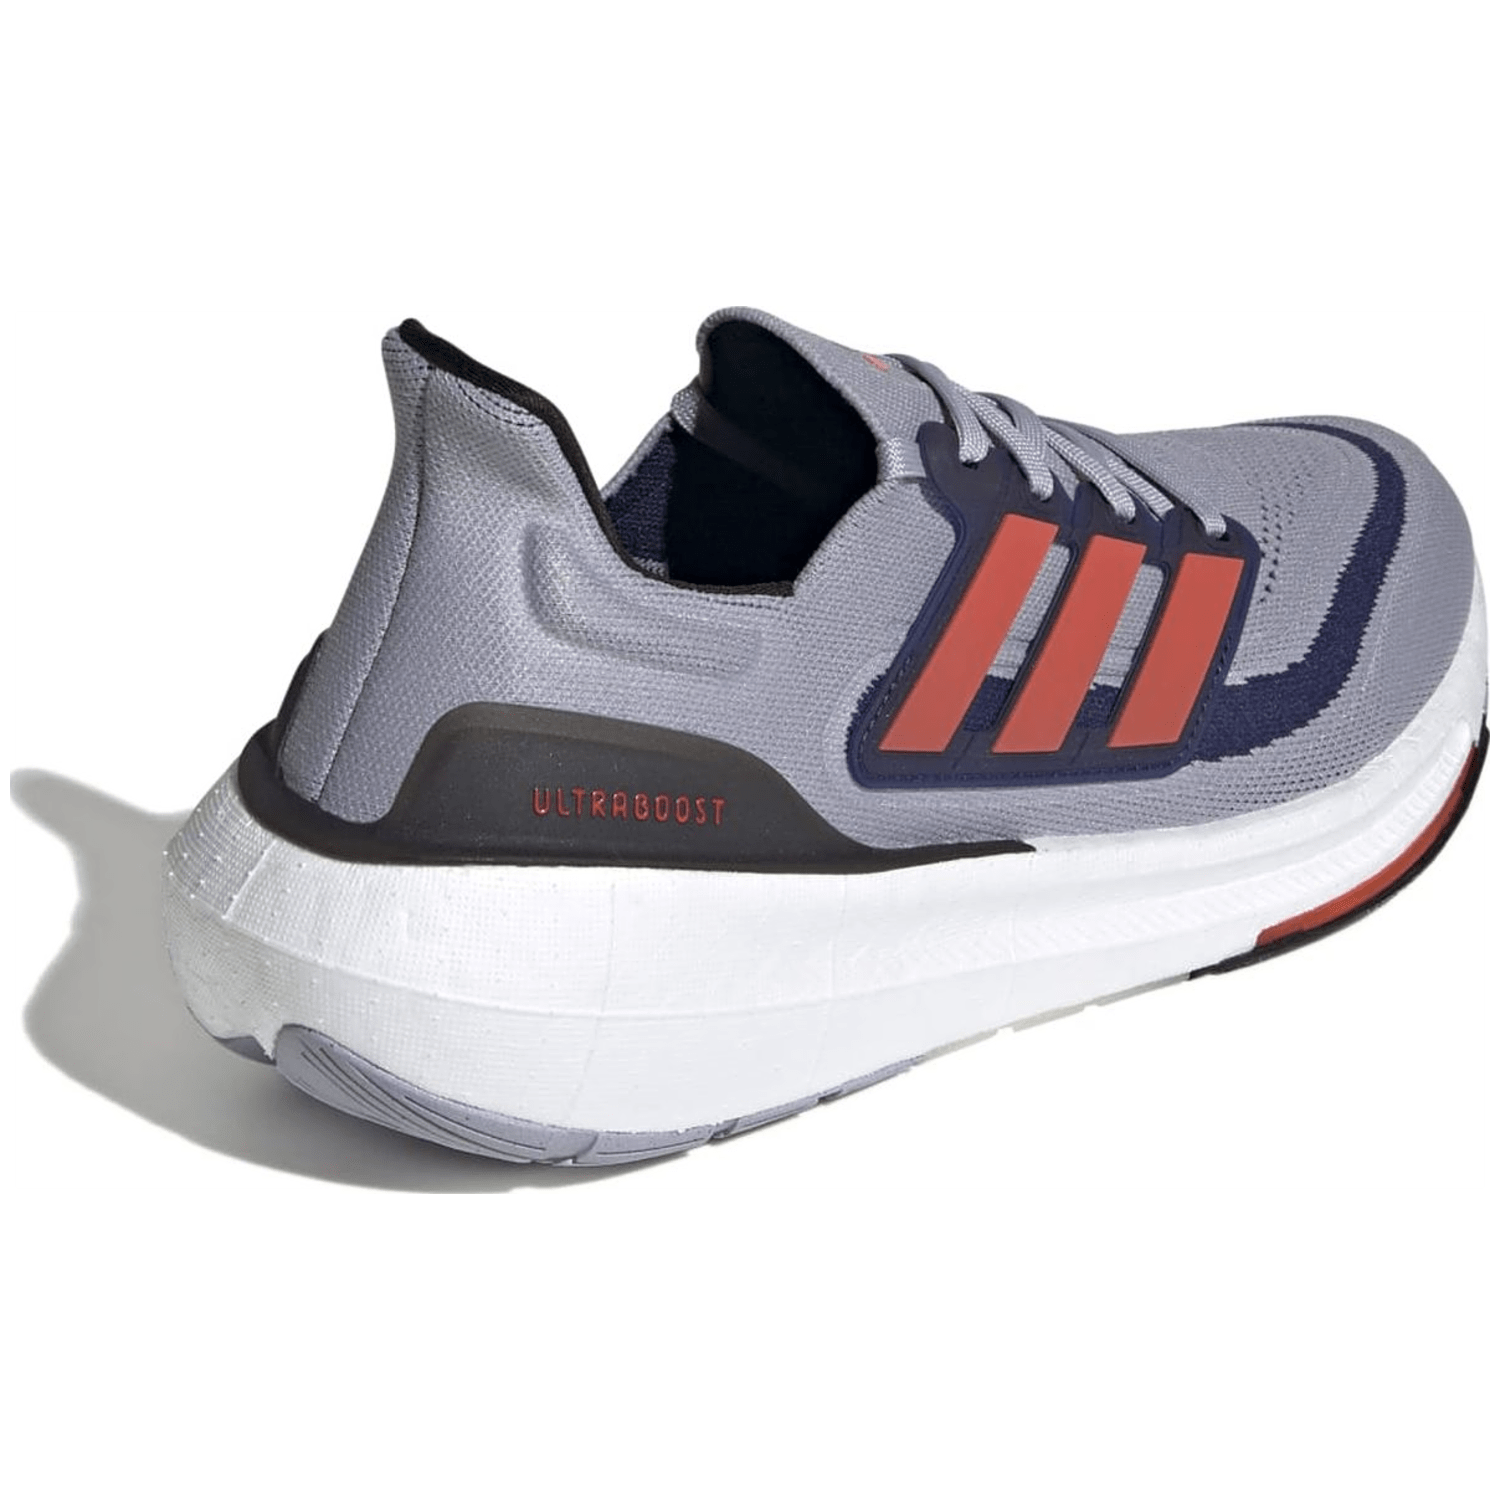 Adidas Ultraboost Light Laufschuh Unisex